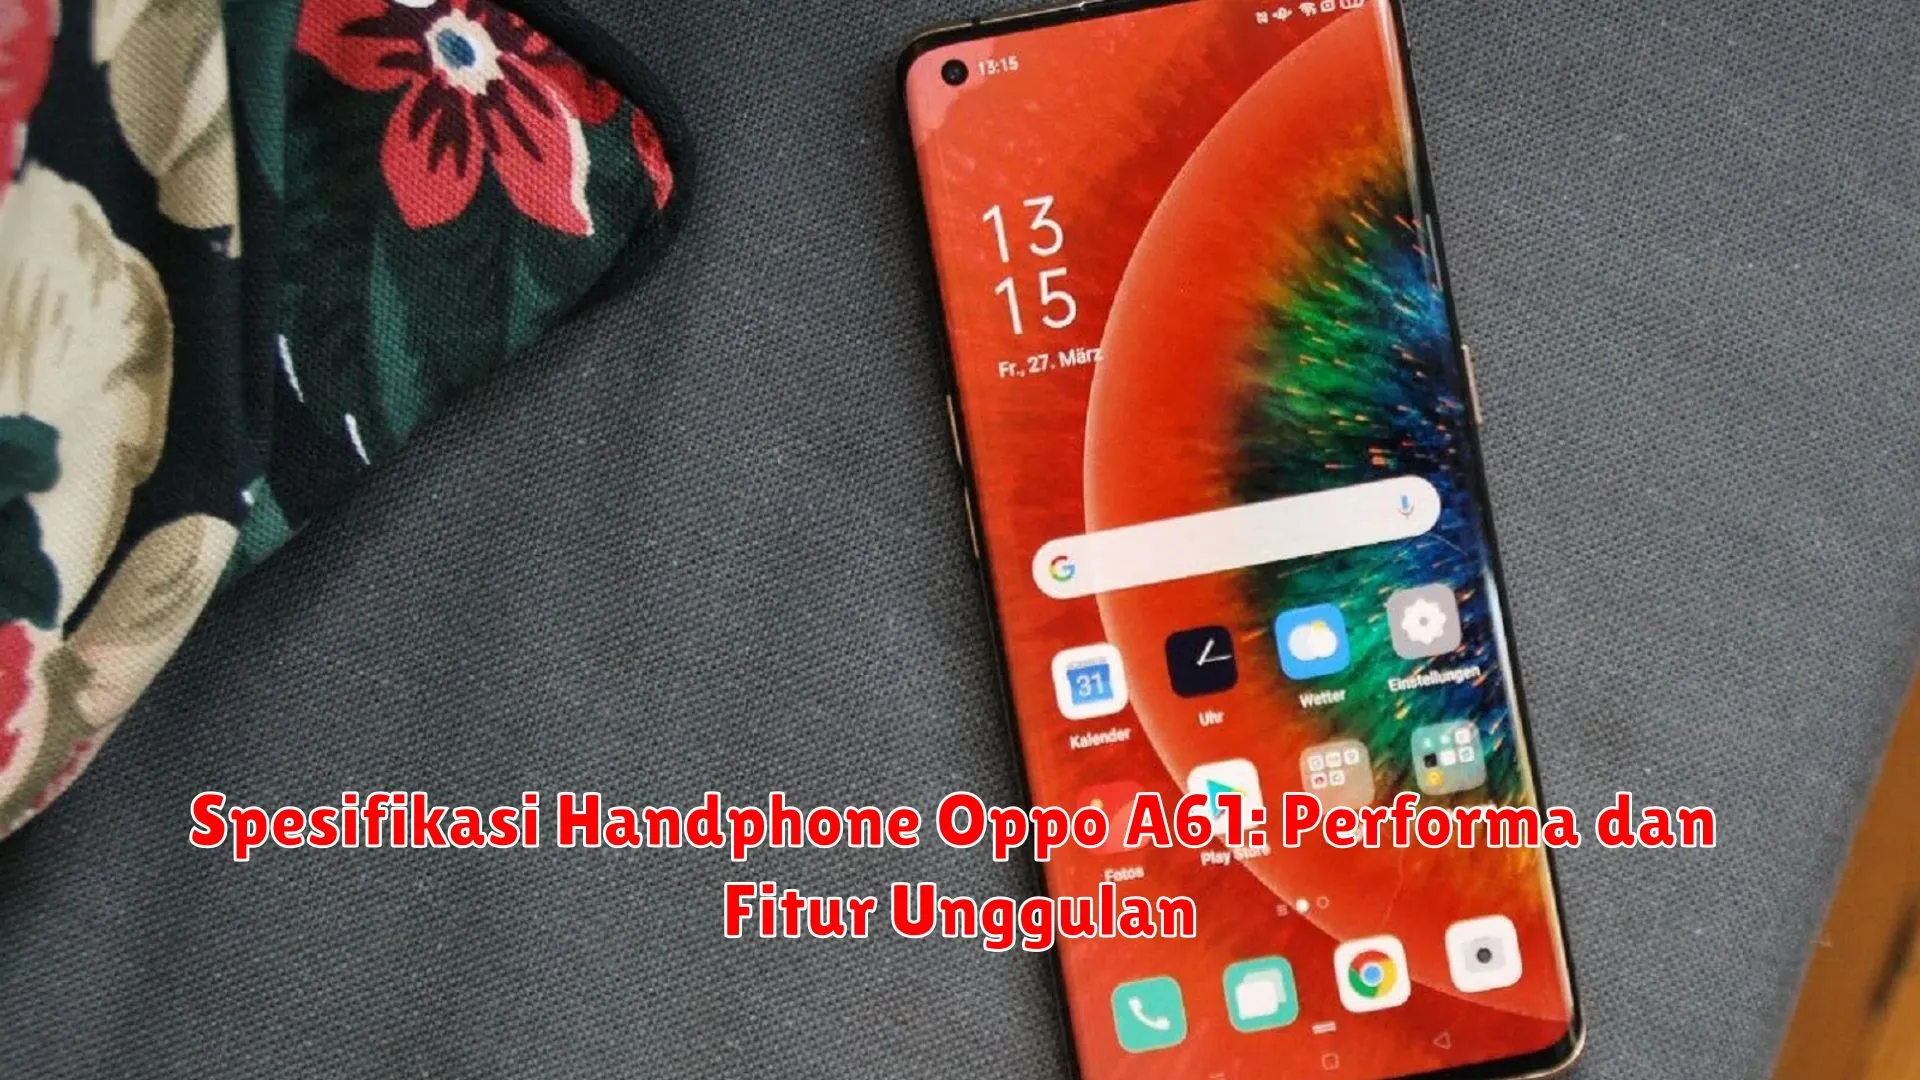 Spesifikasi Handphone Oppo A61: Performa dan Fitur Unggulan